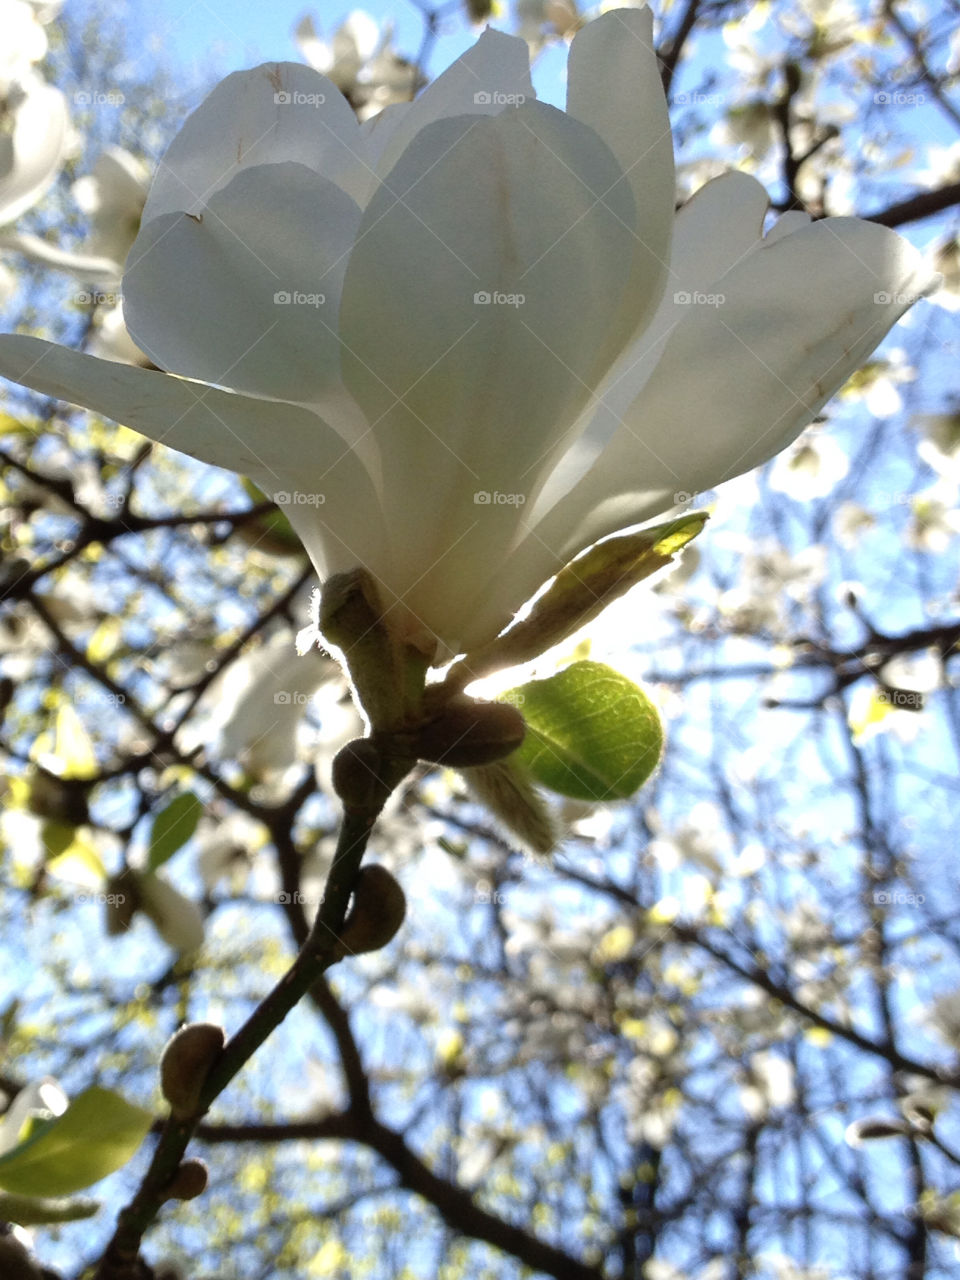 Magnolia flower blossom outdoors